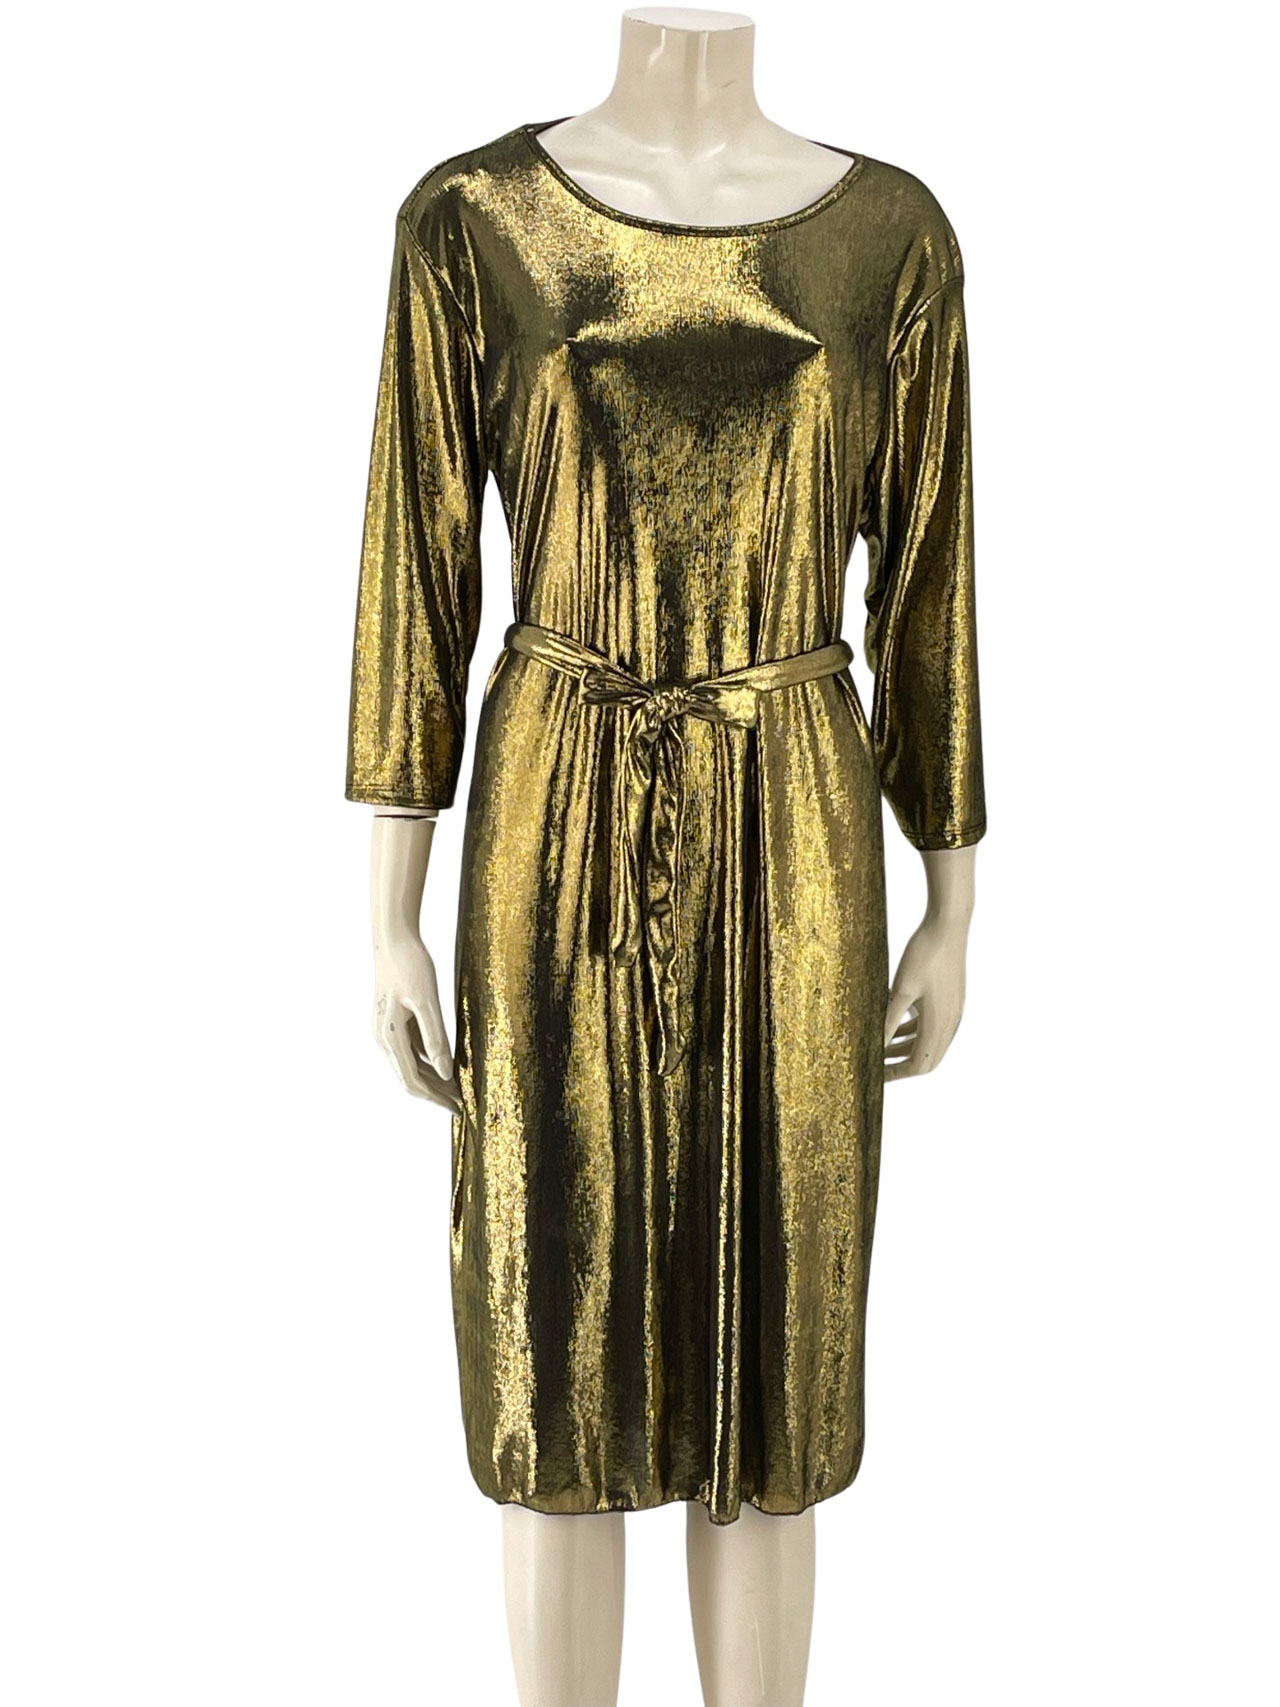 Φόρεμα midi λούρεξ με ζωνάκι κωδ. 3091 μπροστινή όψη- χρυσό